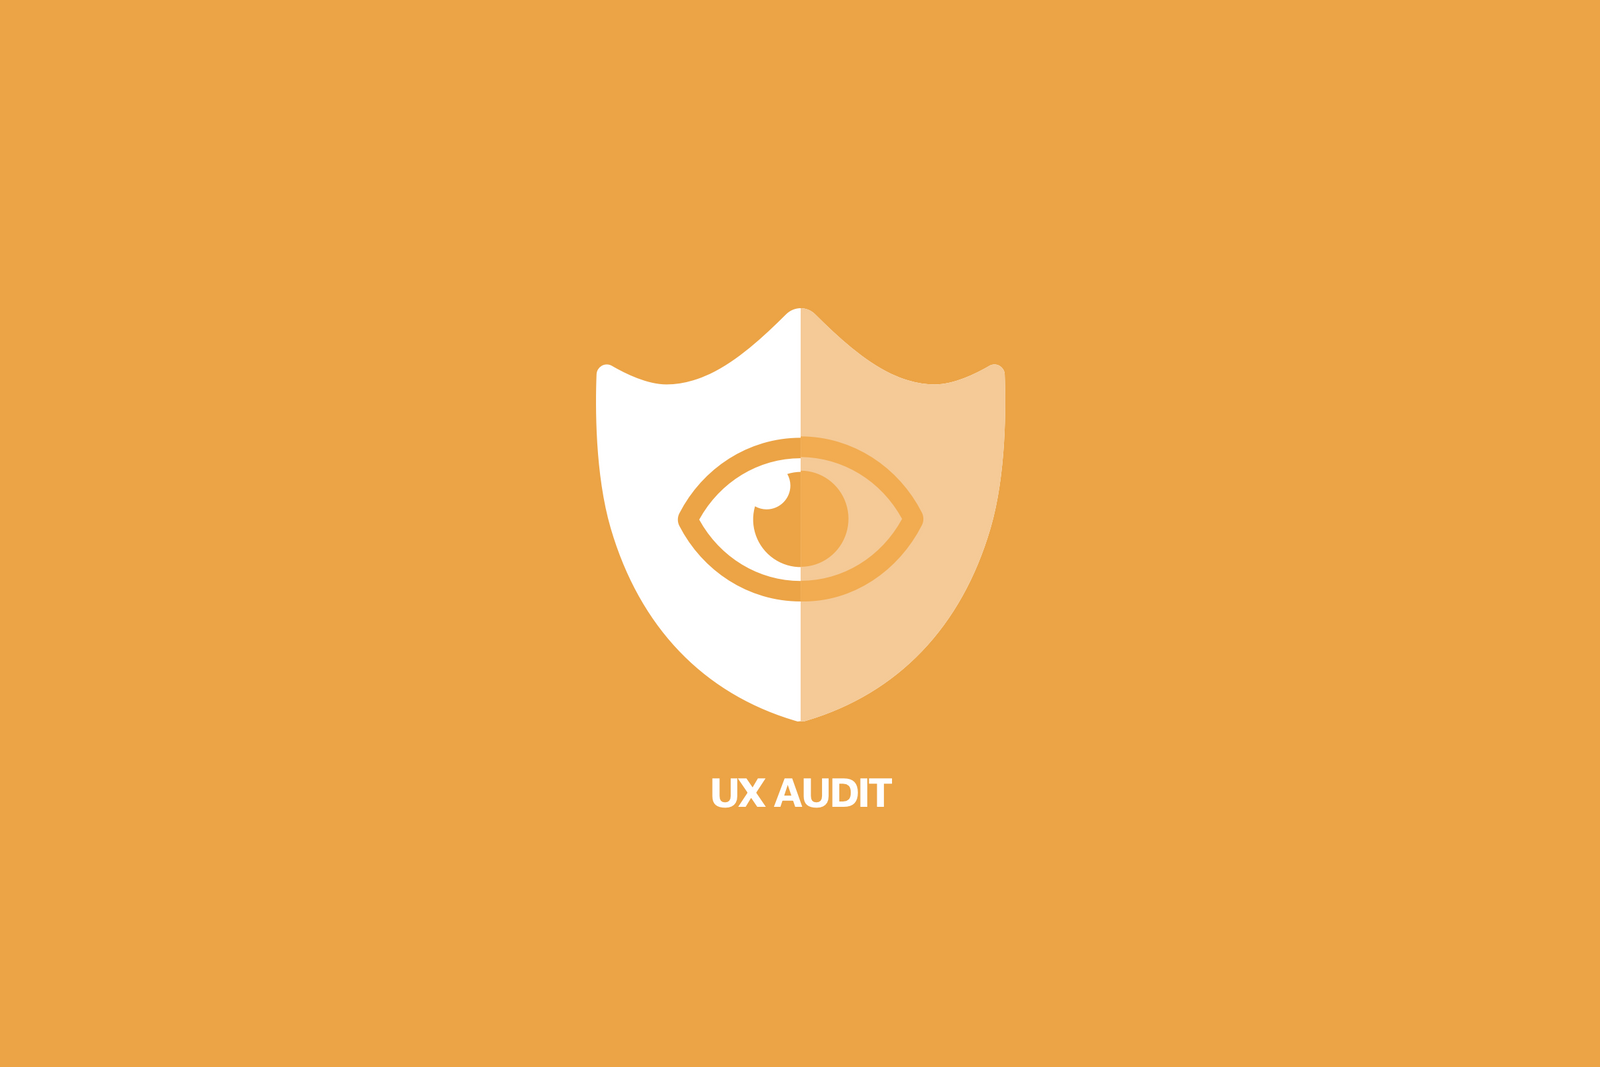 Get a rapid UX audit